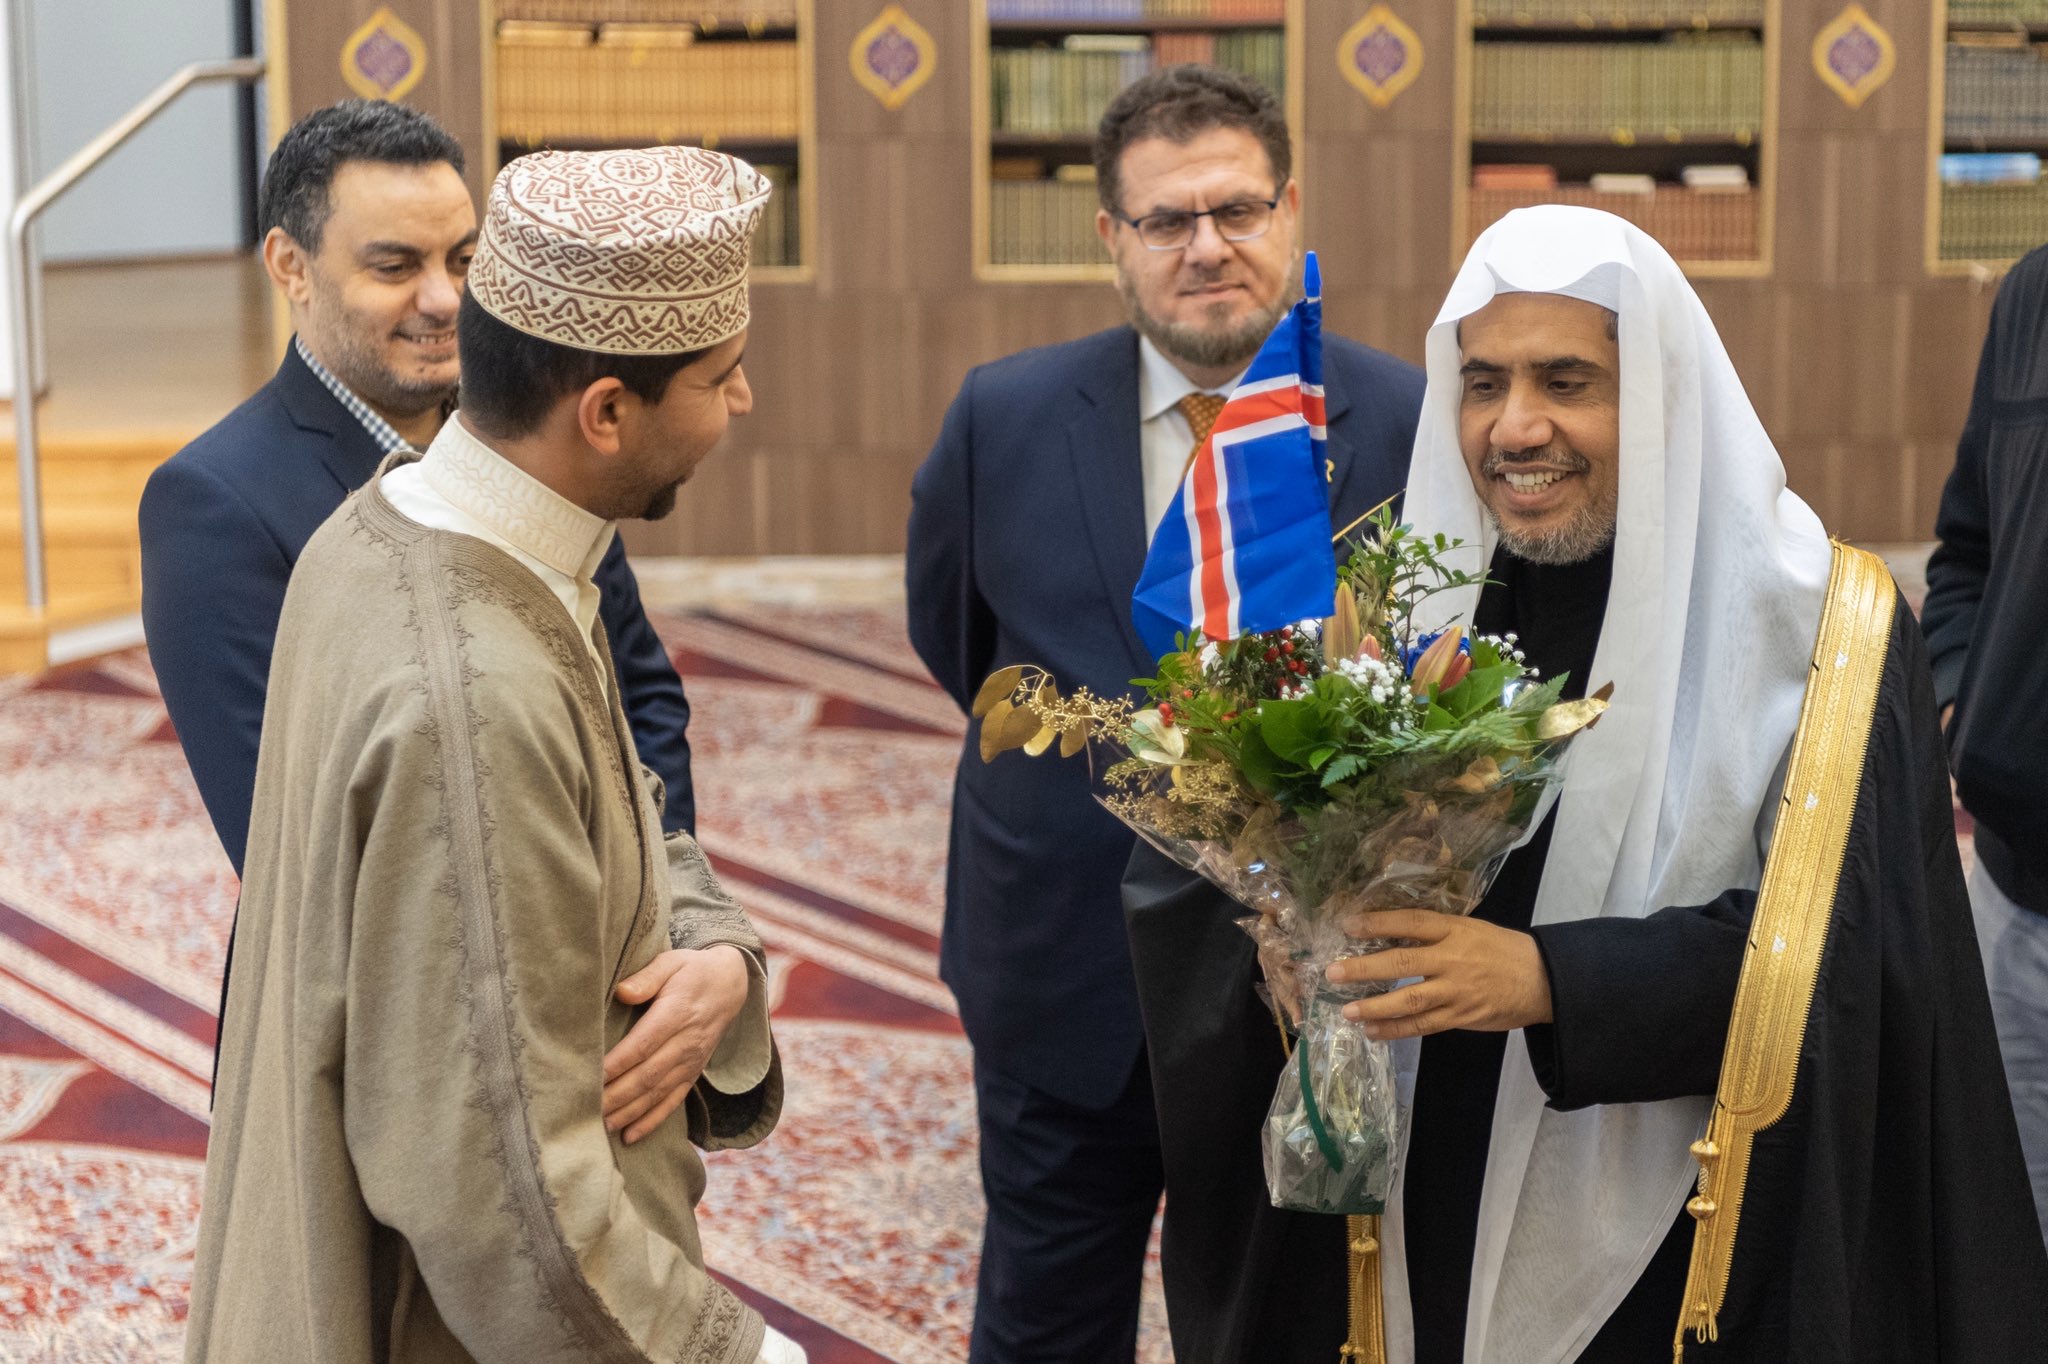 Les responsables de la grande mosquée d’Islande à Reykjavik reçoivent le D.Mohammad Alissa où il a eu une présentation de ses activités suivi d’un dialogue ouvert sur l’importance l’intégration positive.